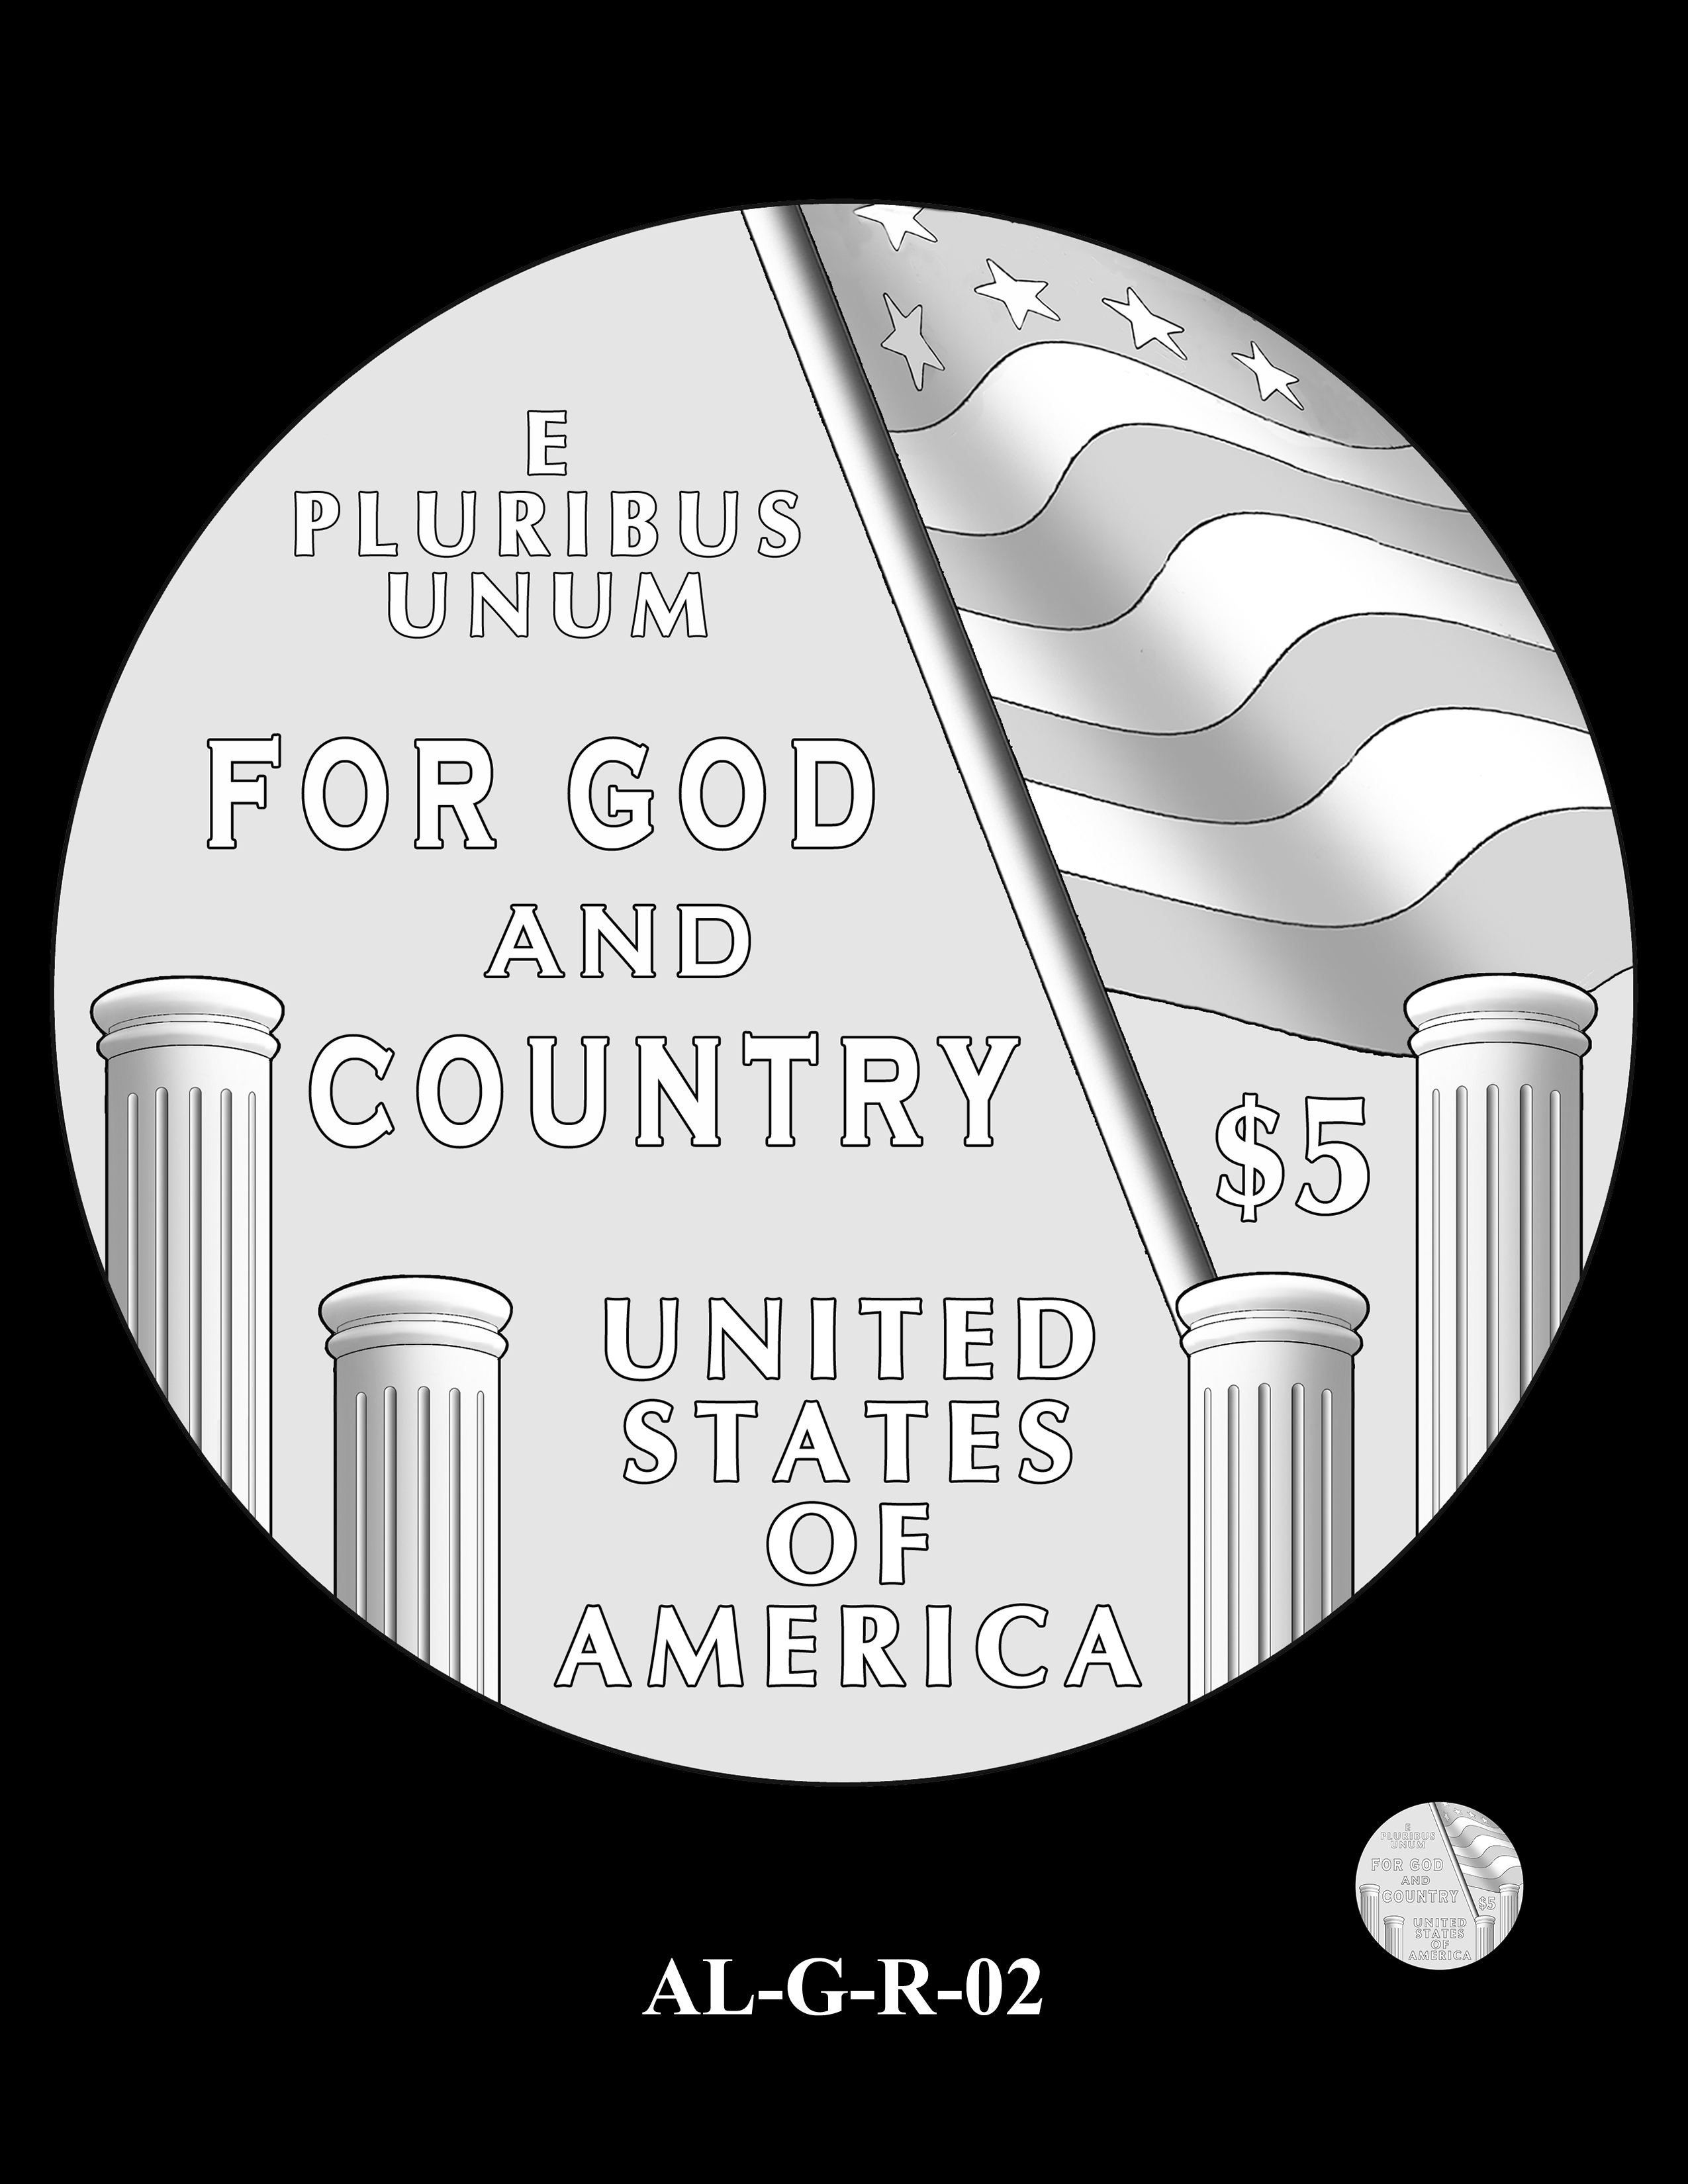 AL-G-R-02 -- 2019 American Legion 100th Anniversary Commemorative Coin Program - Gold Reverse